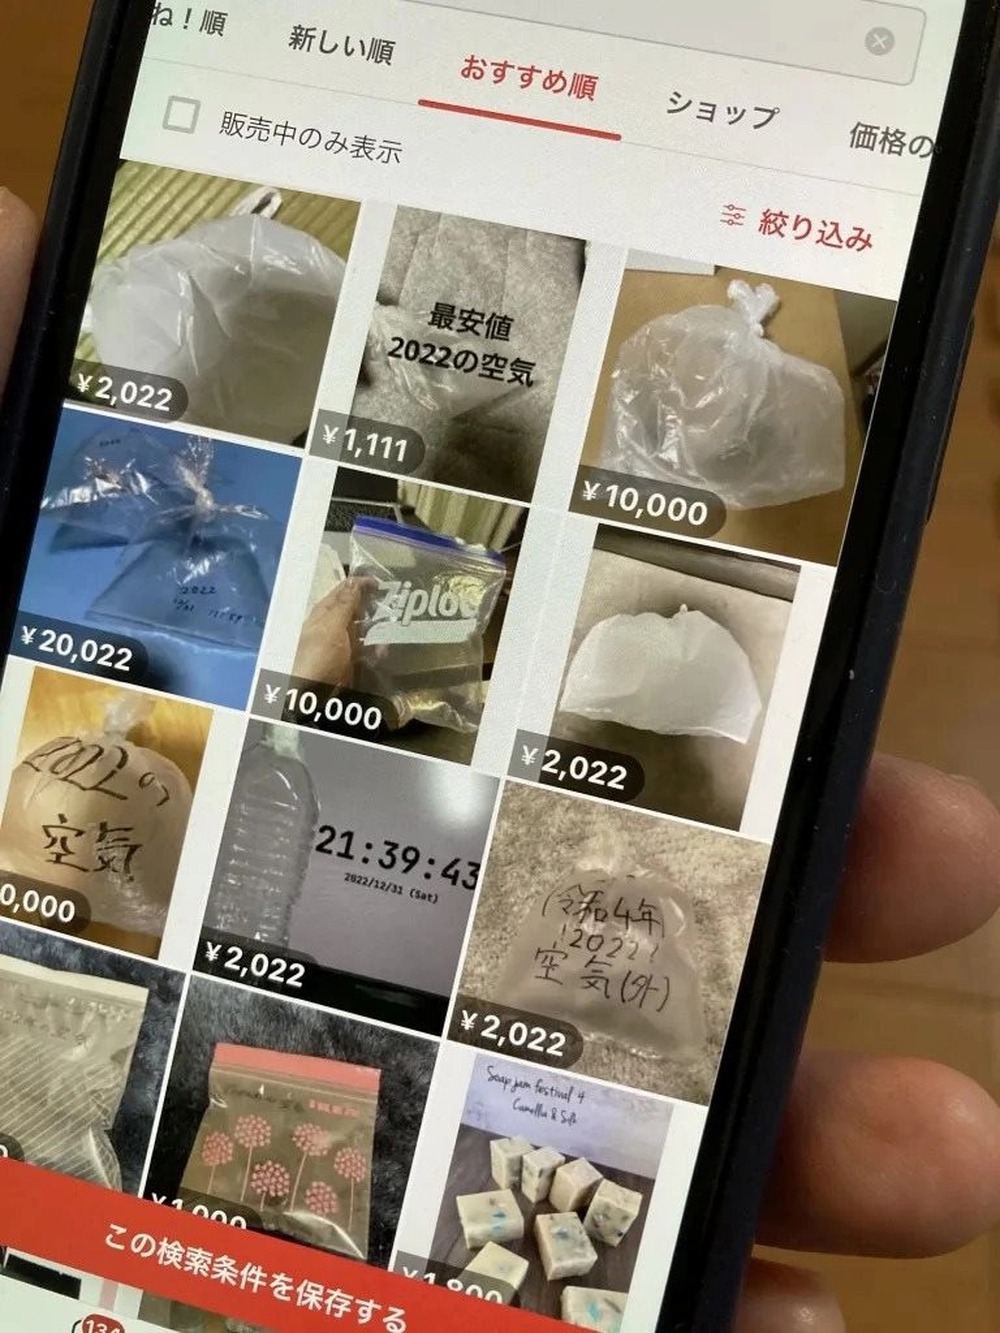 ‘Độc lạ’ Nhật Bản: Chợ trời trực tuyến bán cả ‘phép màu’, hứa hẹn đủ điều nhưng chỉ là chiêu móc túi kiểu mới thời công nghệ - Ảnh 3.